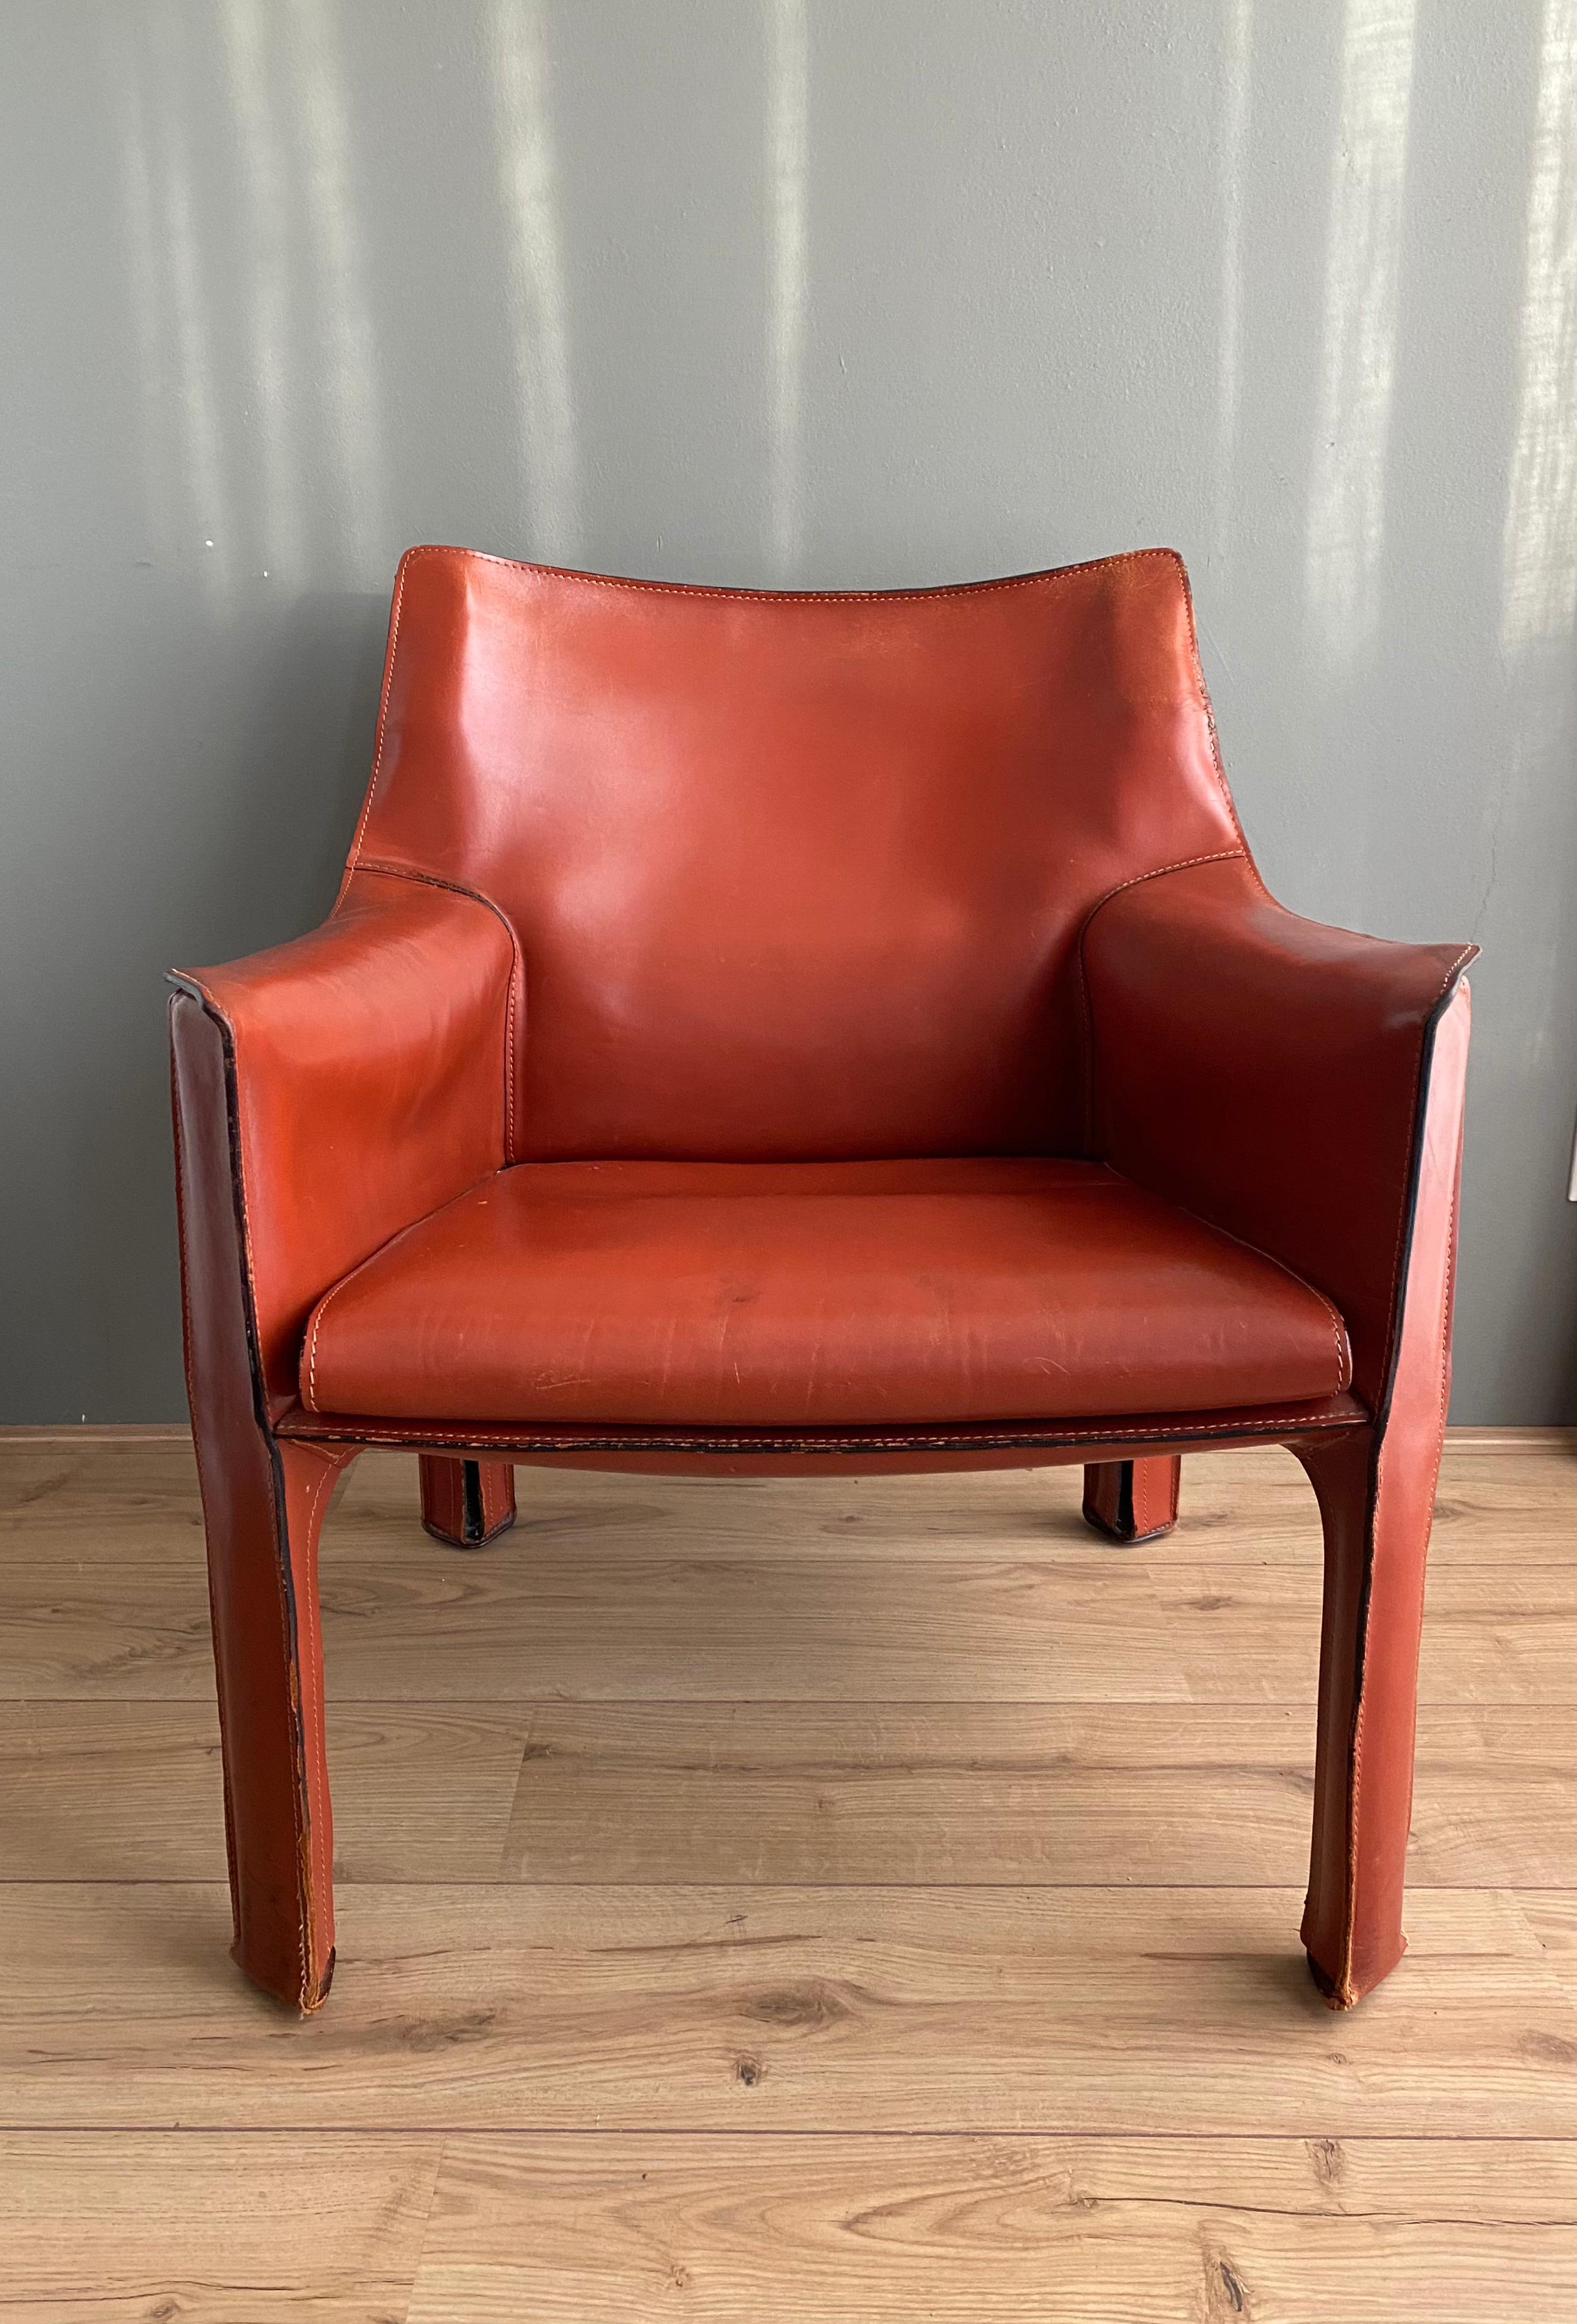 Chaise de salon en cuir italien de couleur cognac ou terre cuite, conçue par Mario Bellini, vers les années 1970. Le revêtement en cuir épais recouvre une base en métal. Chaque jambe est munie d'une fermeture éclair. Sur le côté supérieur de la